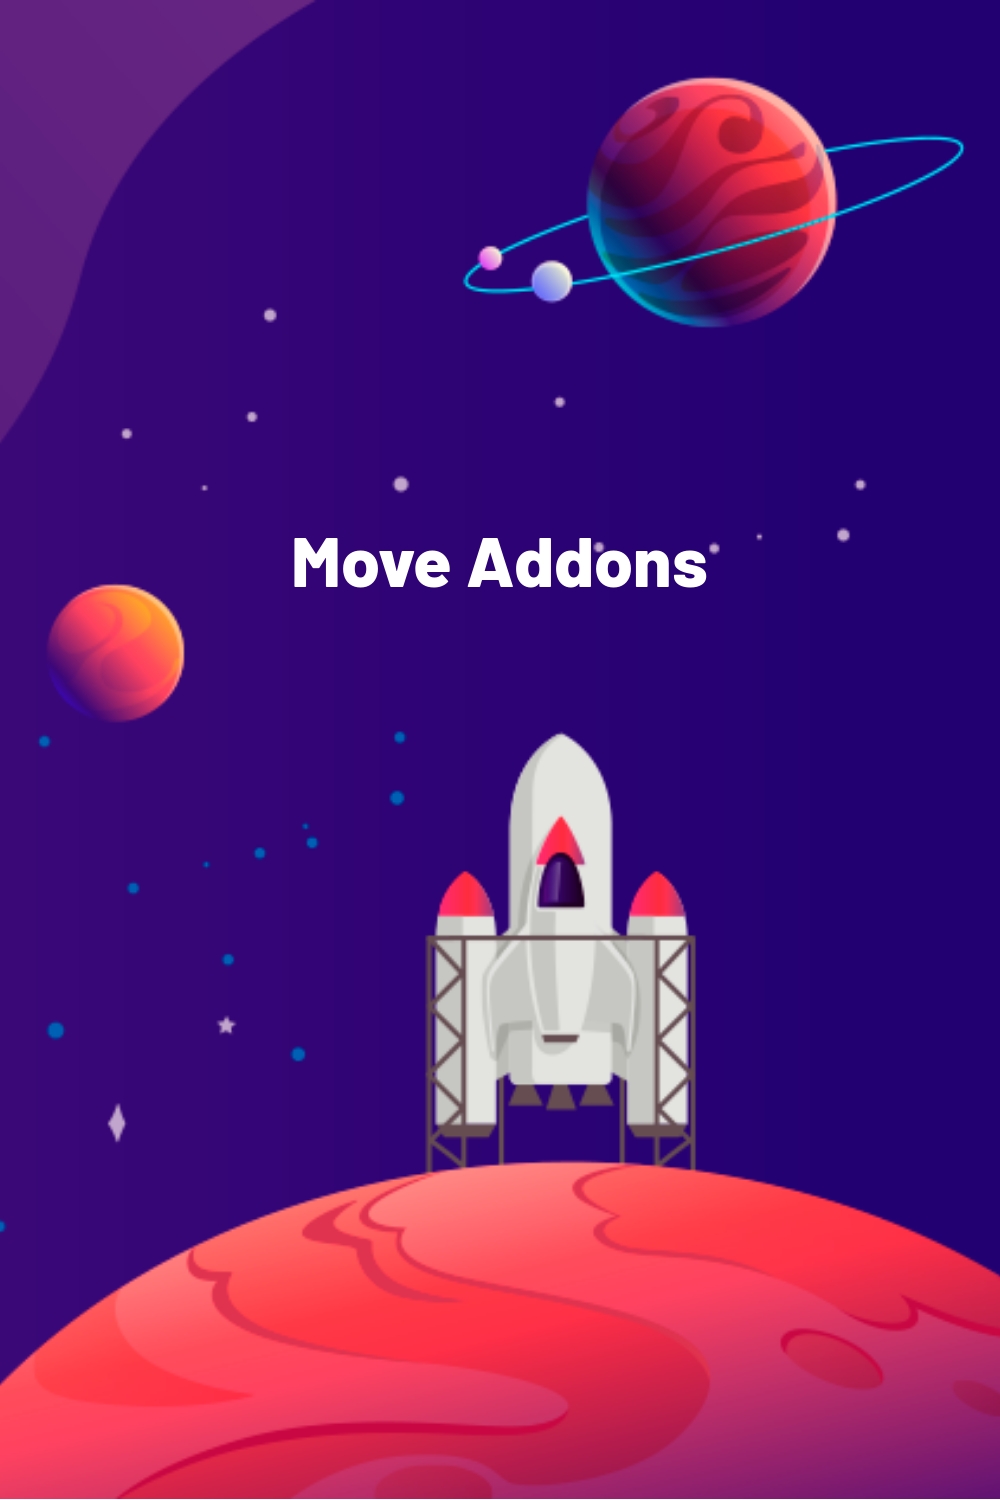 Move Addons